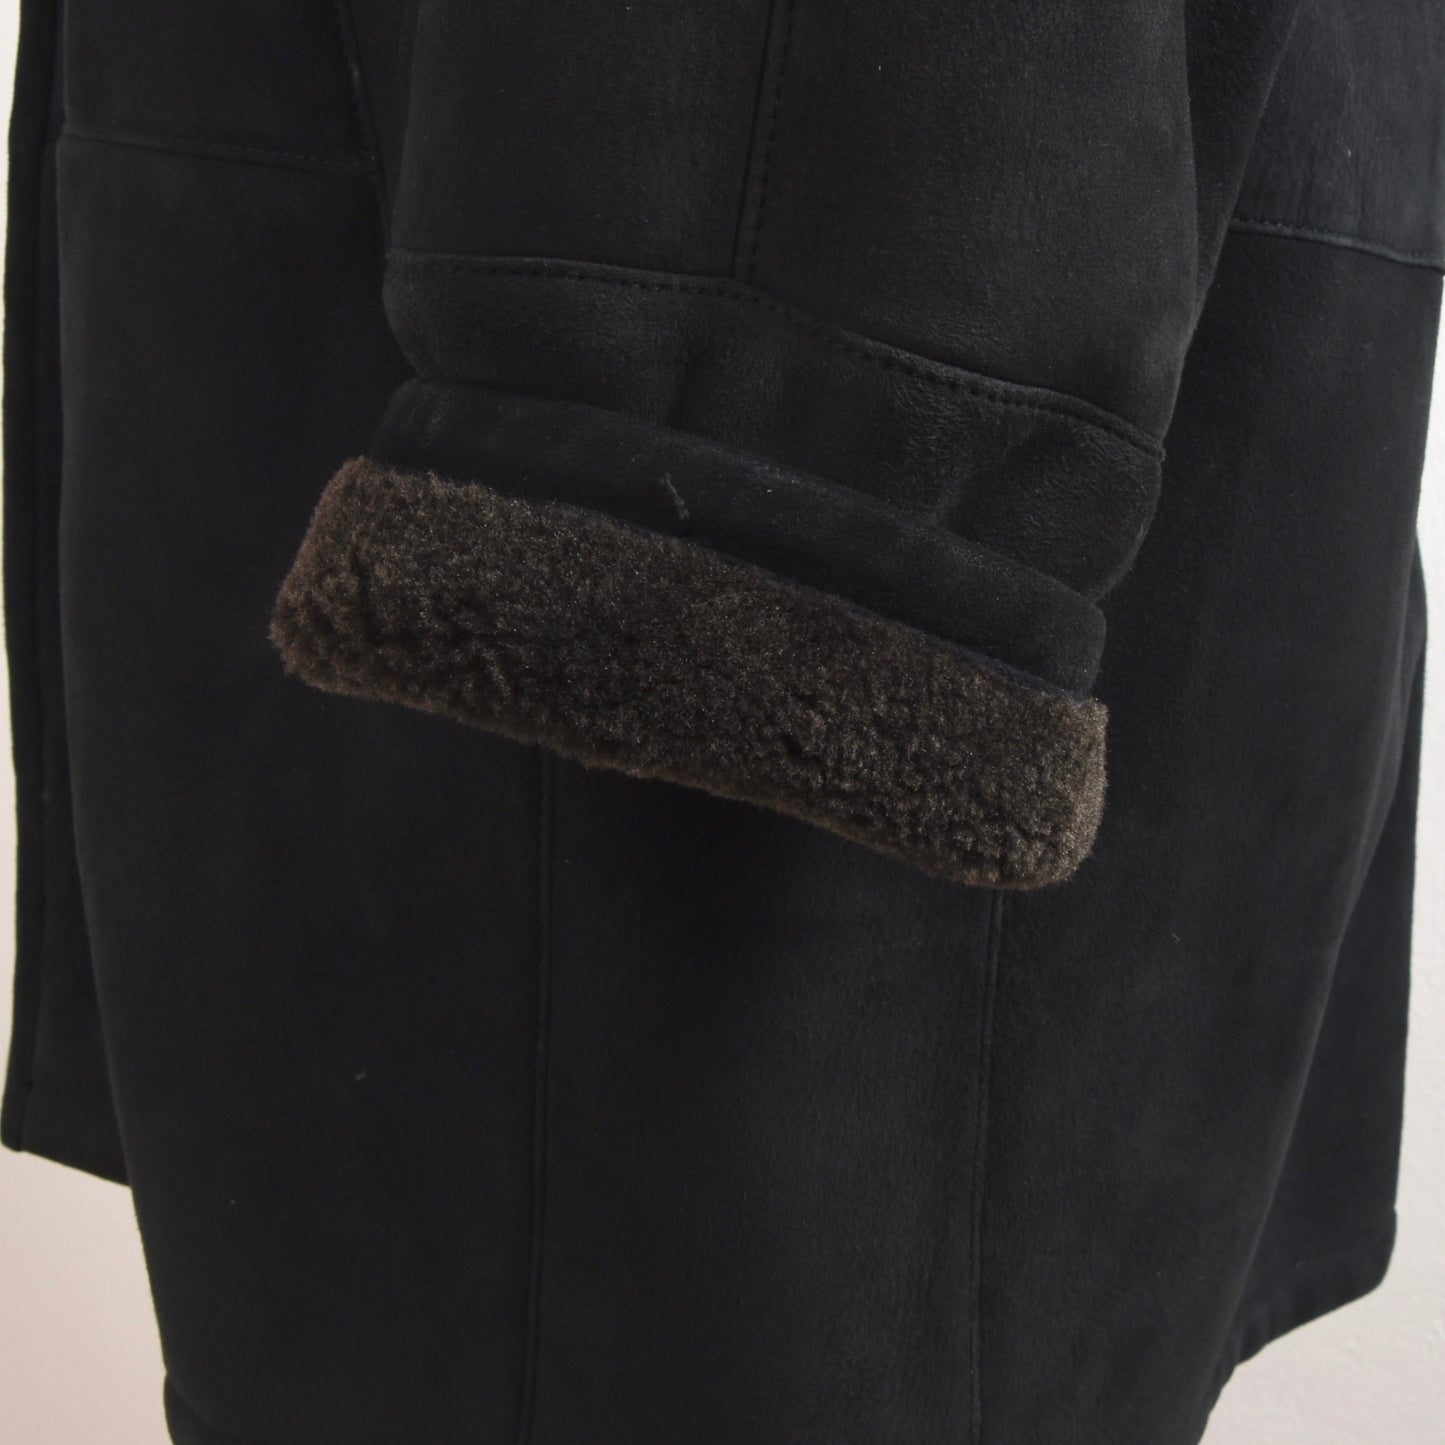 Ermenegildo Zegna Shearling Coat Size 50 - Black